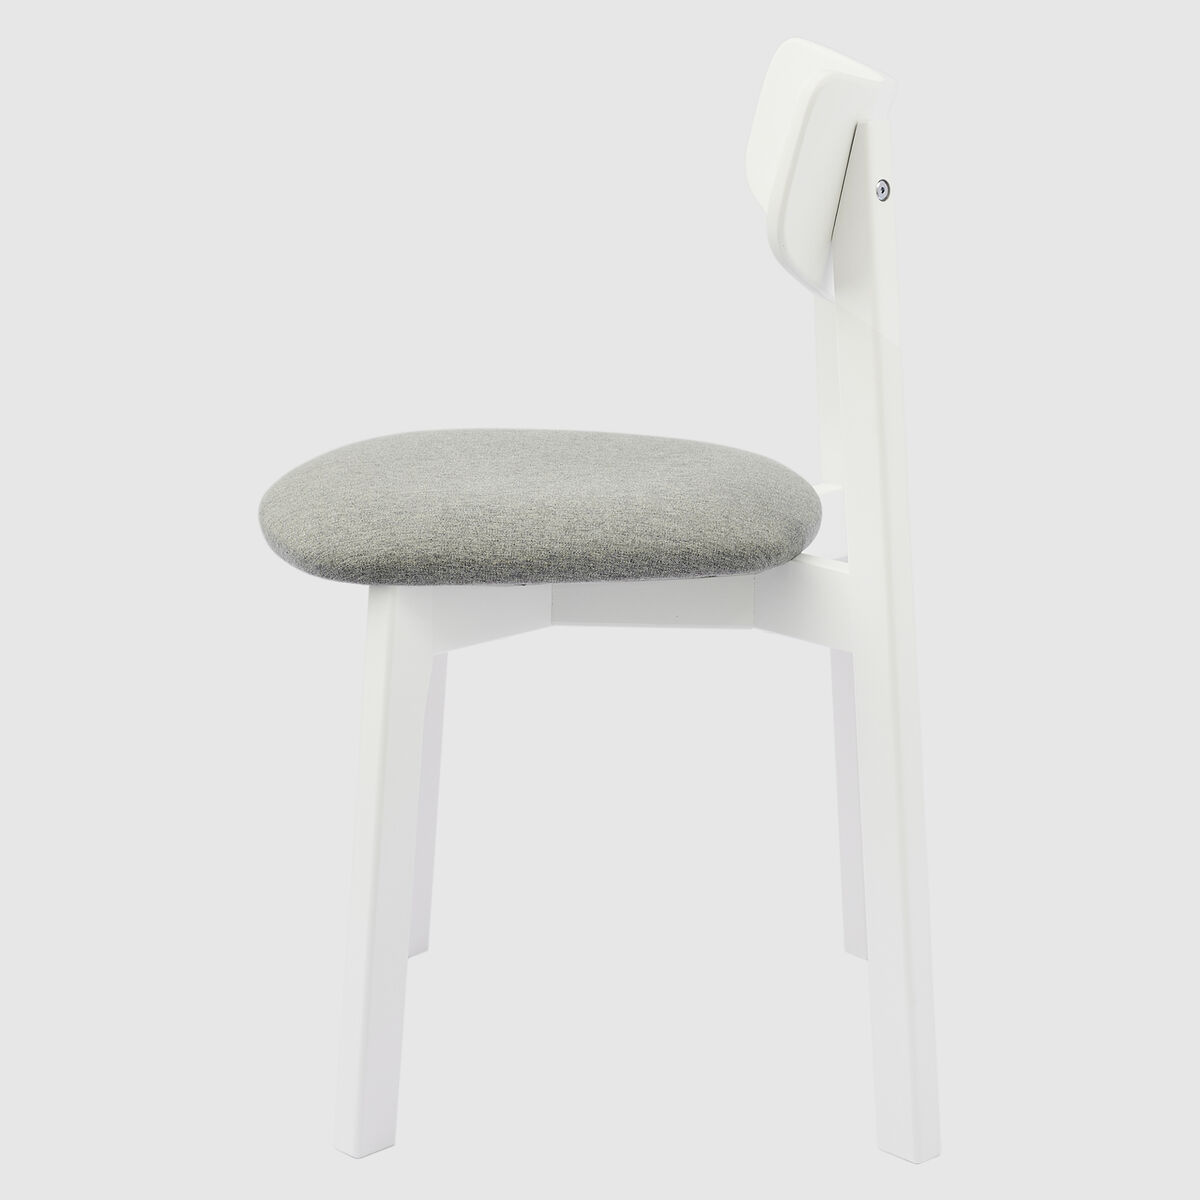 Комплект из двух стульев Вега с мягким сиденьем, Белый/Silver